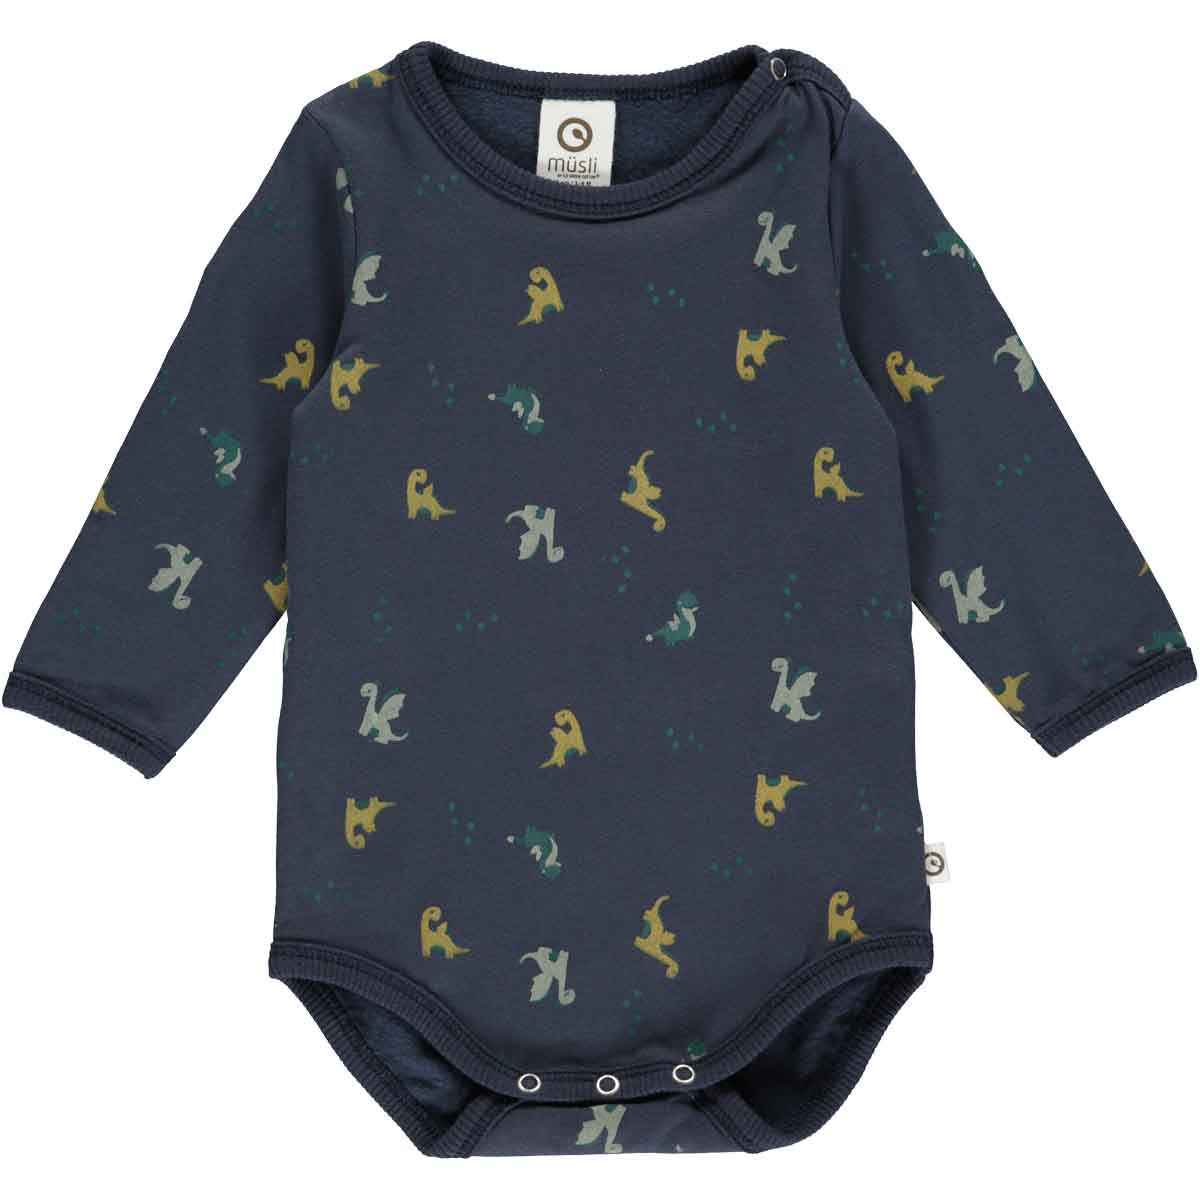 Musli Baby Boy Clothes Fall 23